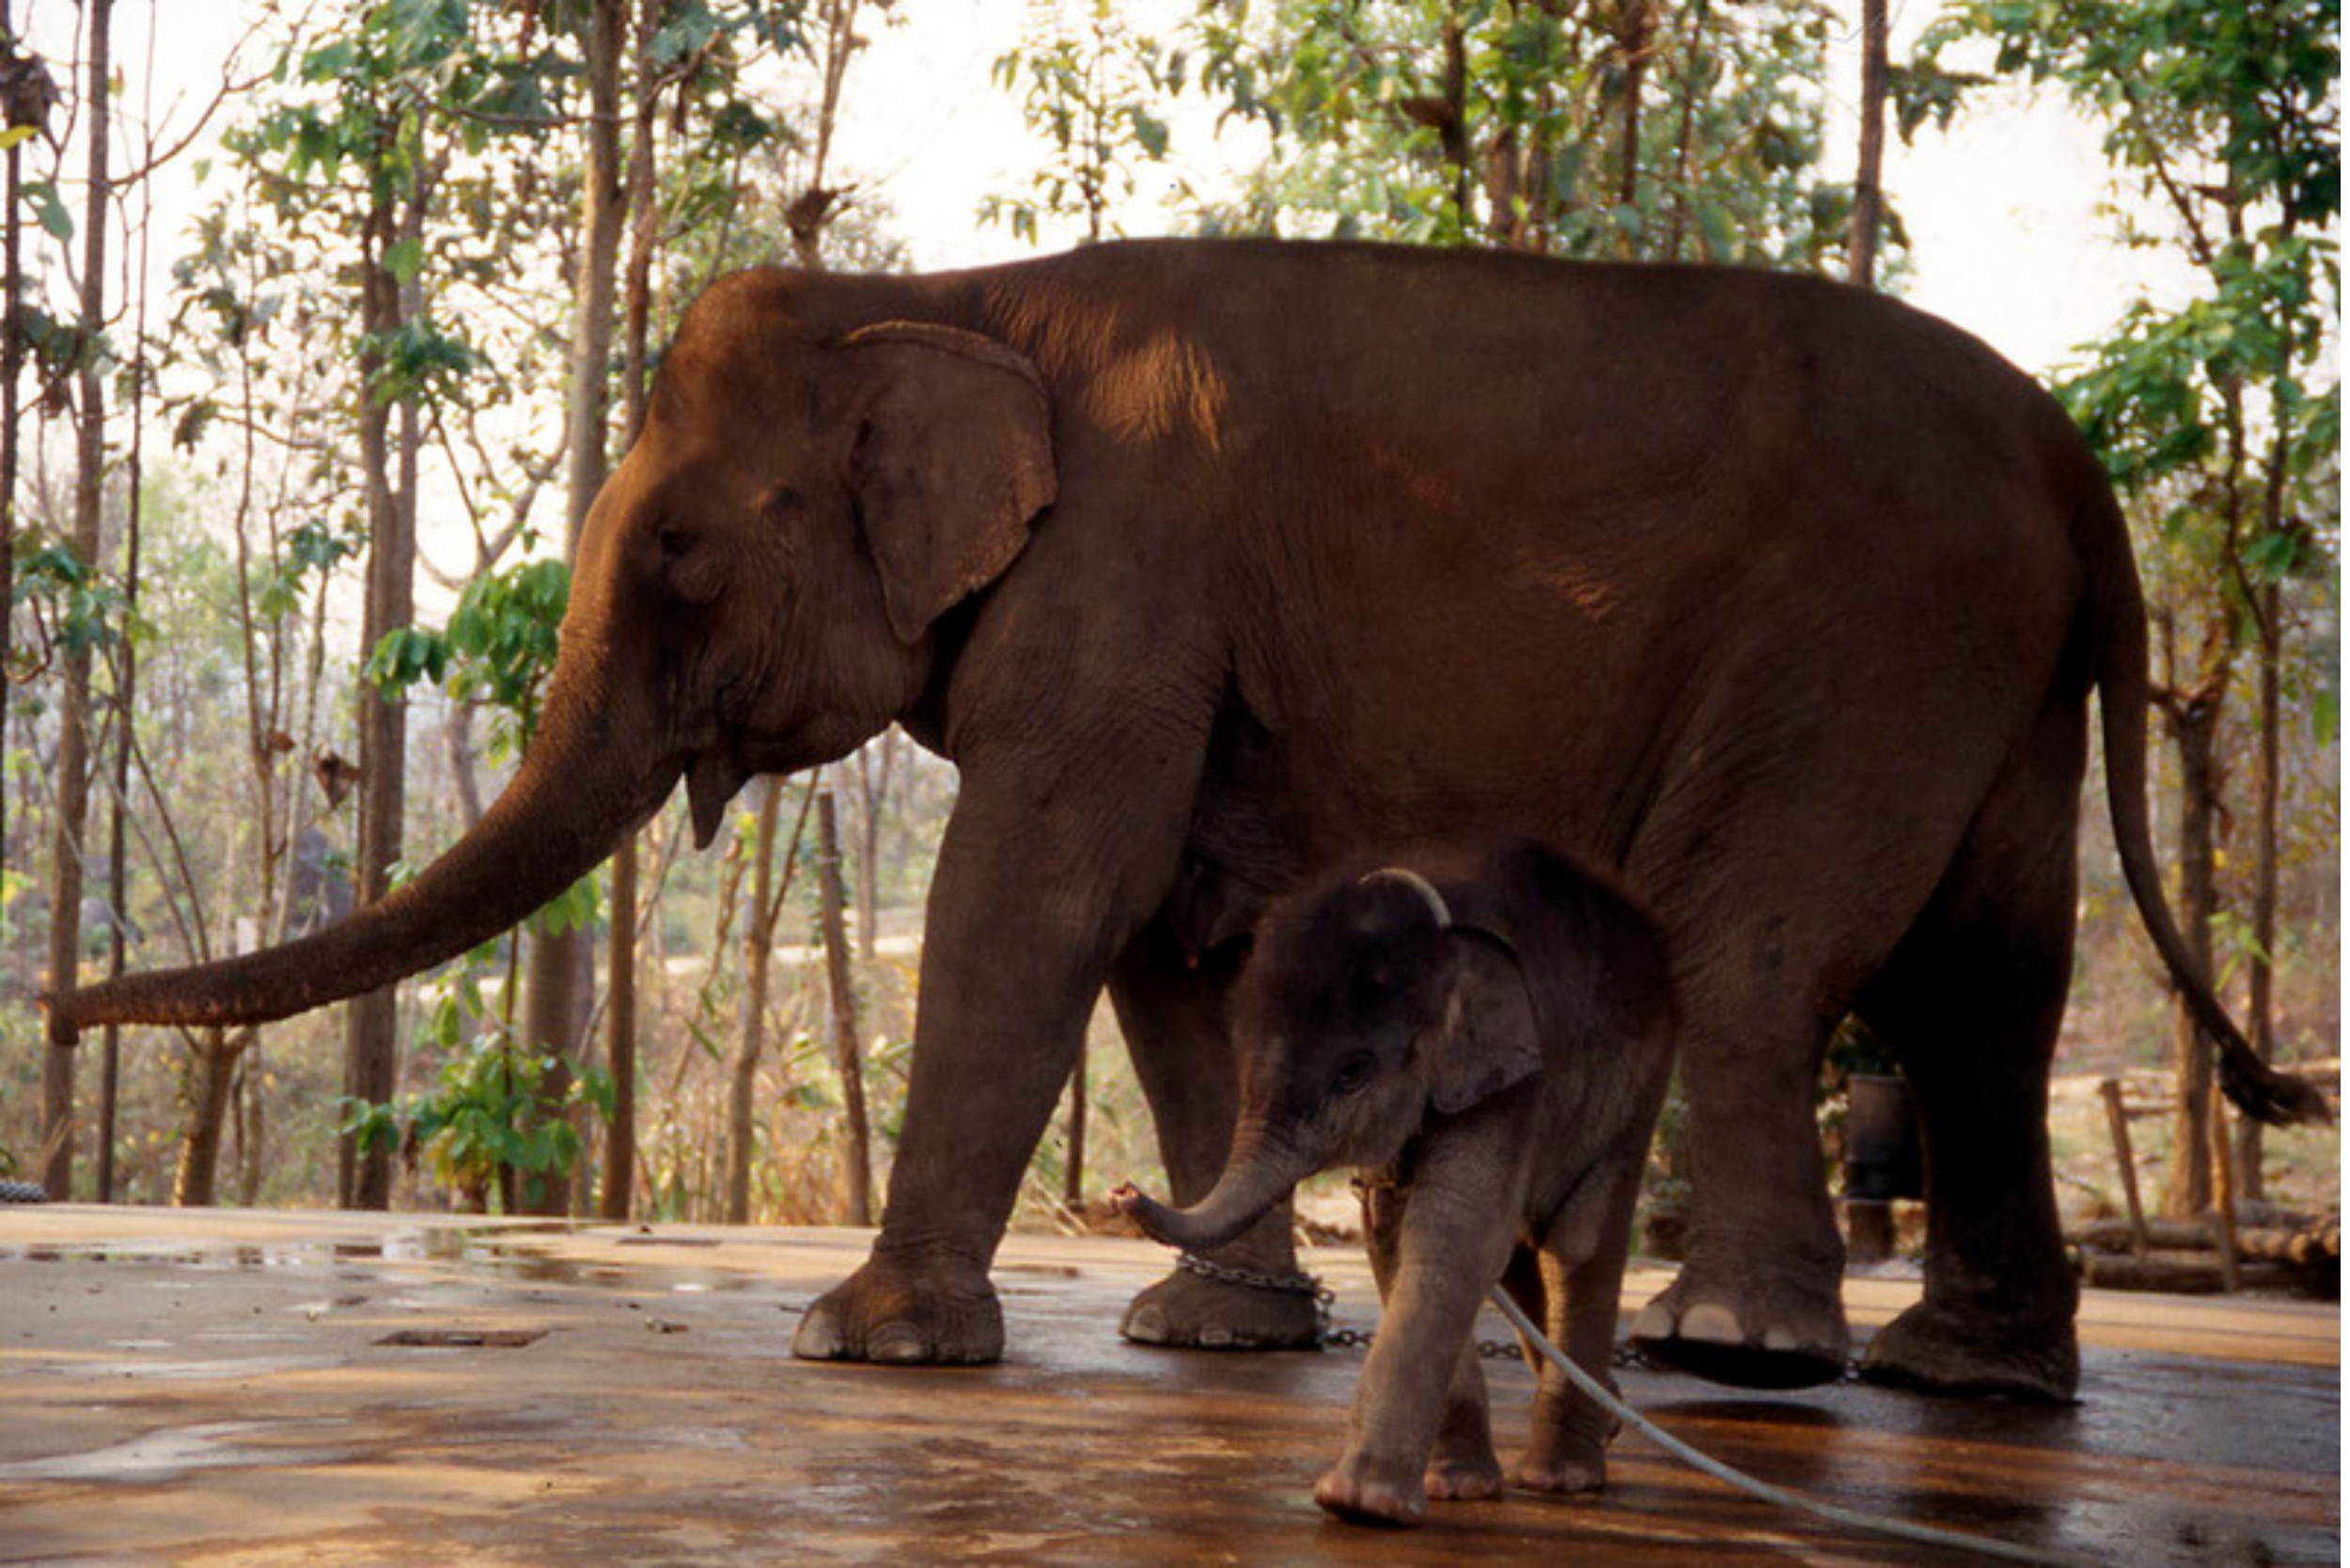 Una elefante madre cautiva con su cría en Tailandia.